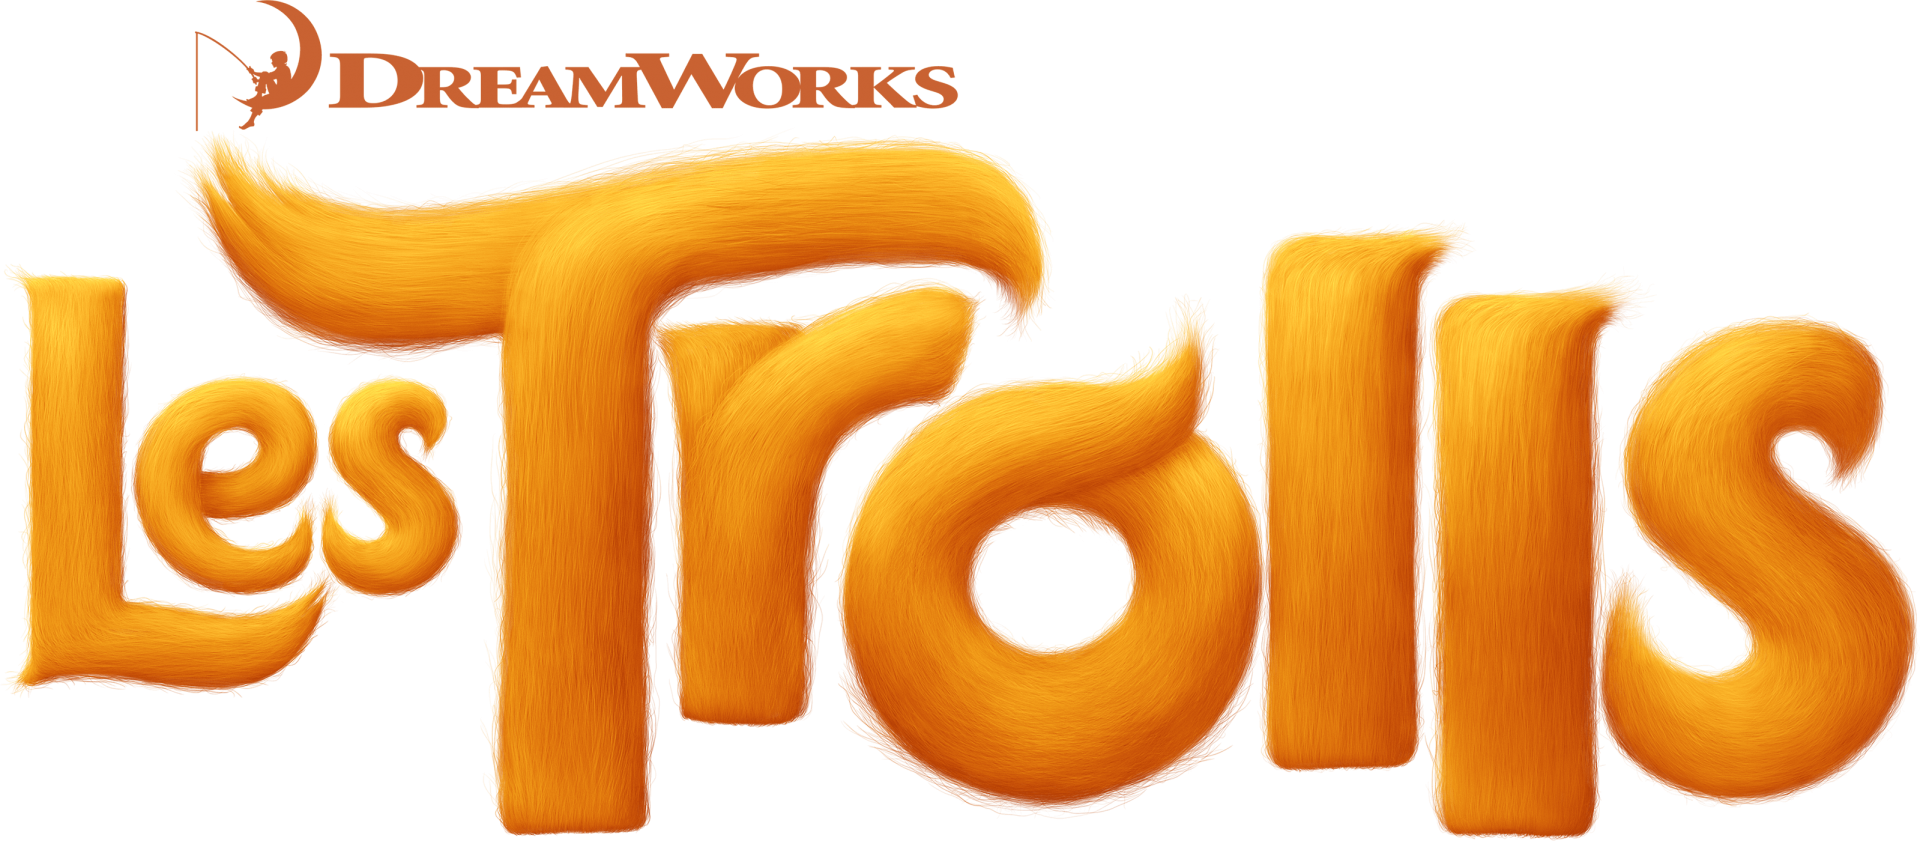 Première bande-annonce teaser pour "Les Trolls" de DreamWorks animation